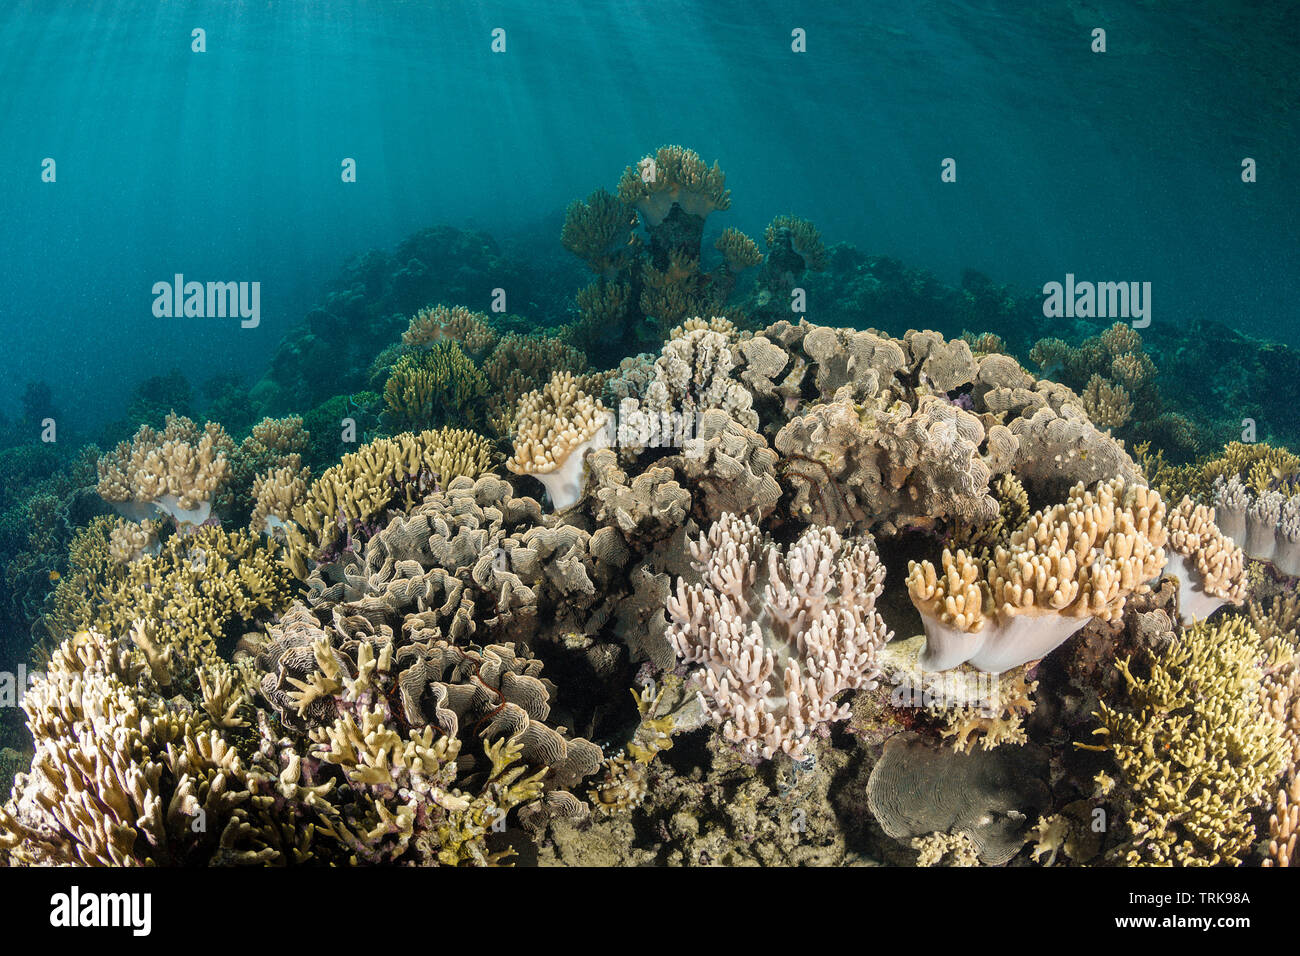 Arrecifes de Coral sanos, Lissenung, Nueva Irlanda, Papua Nueva Guinea Foto de stock